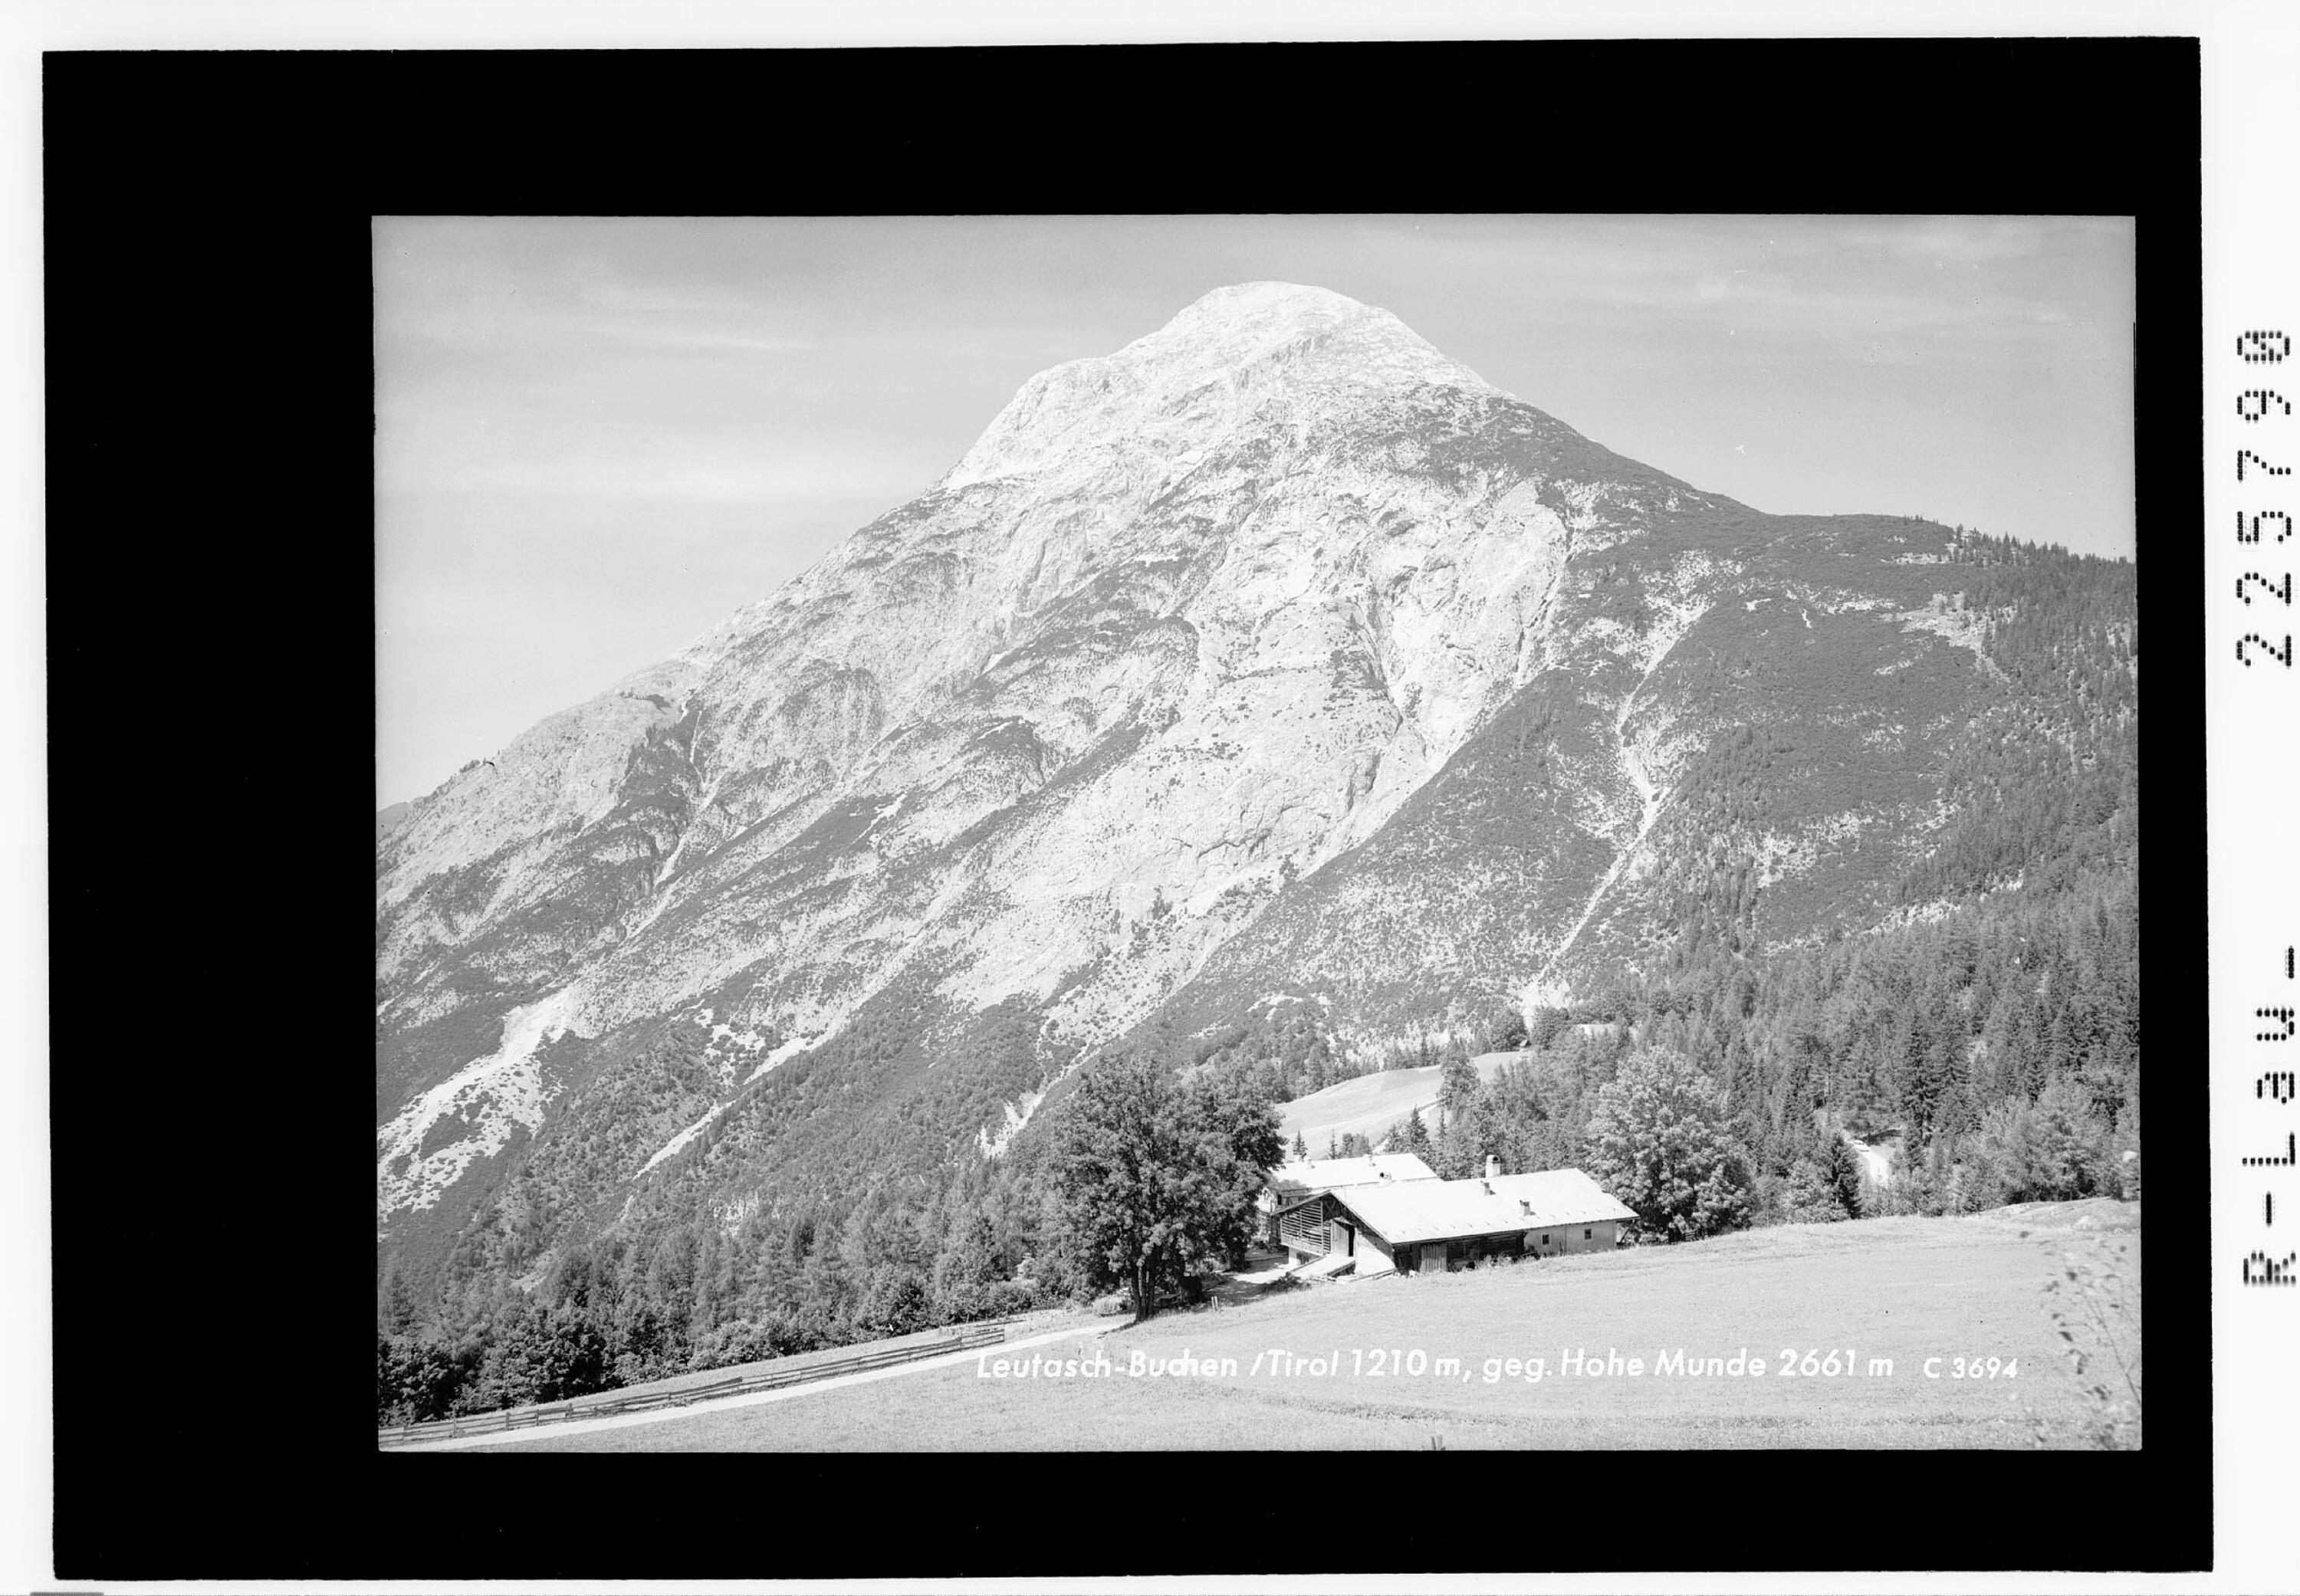 Leutasch - Buchen / Tirol 1210 m gegen Hohe Munde 2661 m></div>


    <hr>
    <div class=